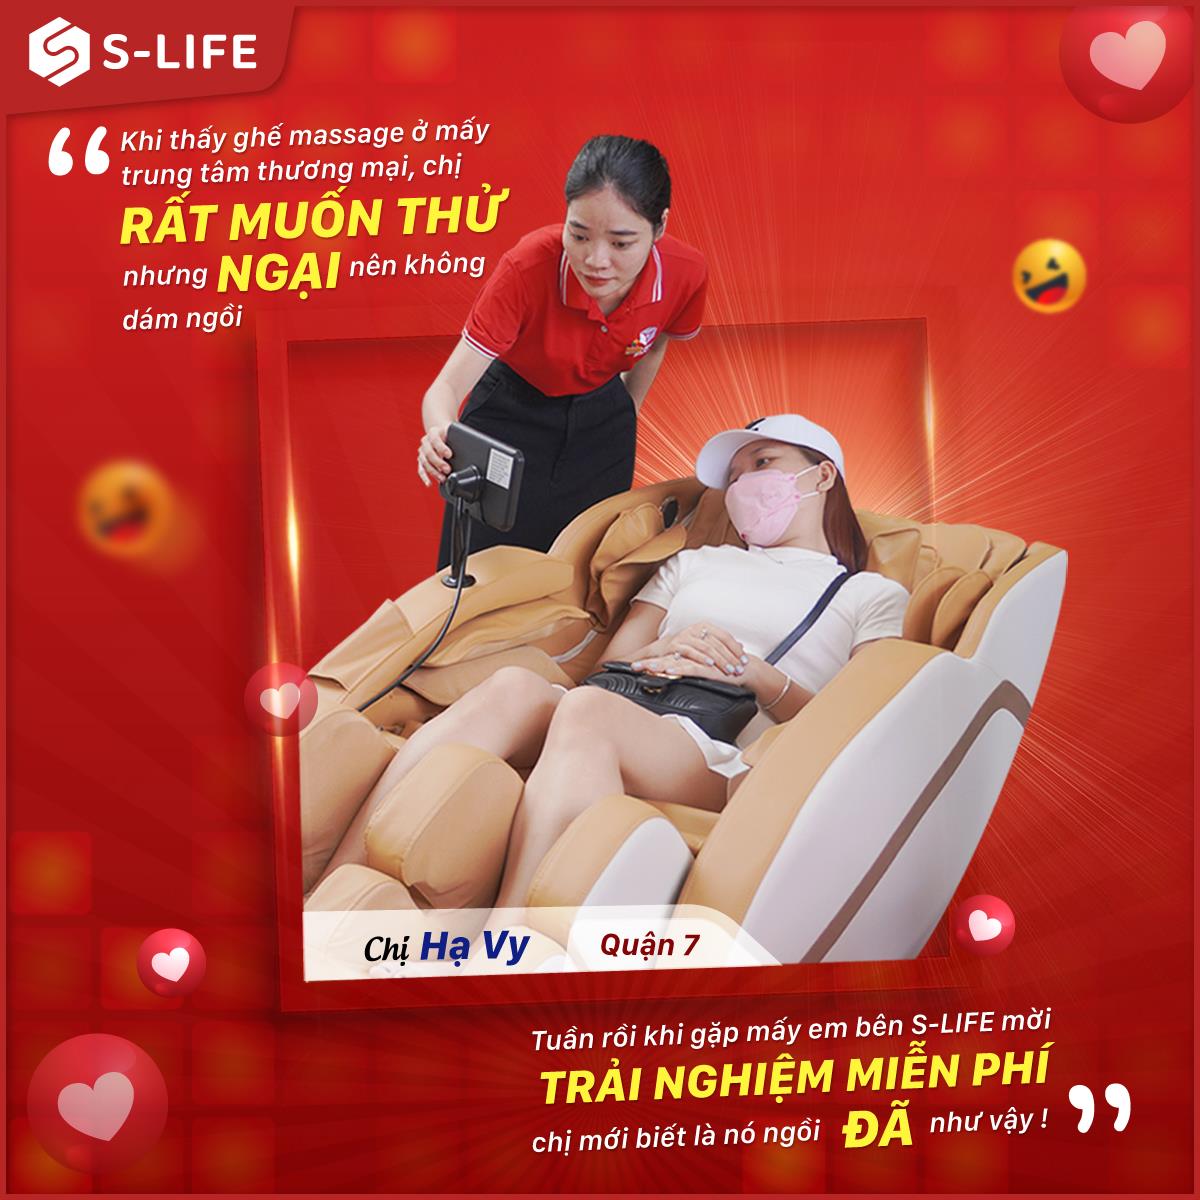 S-Life: Thương hiệu chăm sóc sức khỏe đáng lưu tâm cho người Việt - Ảnh 3.